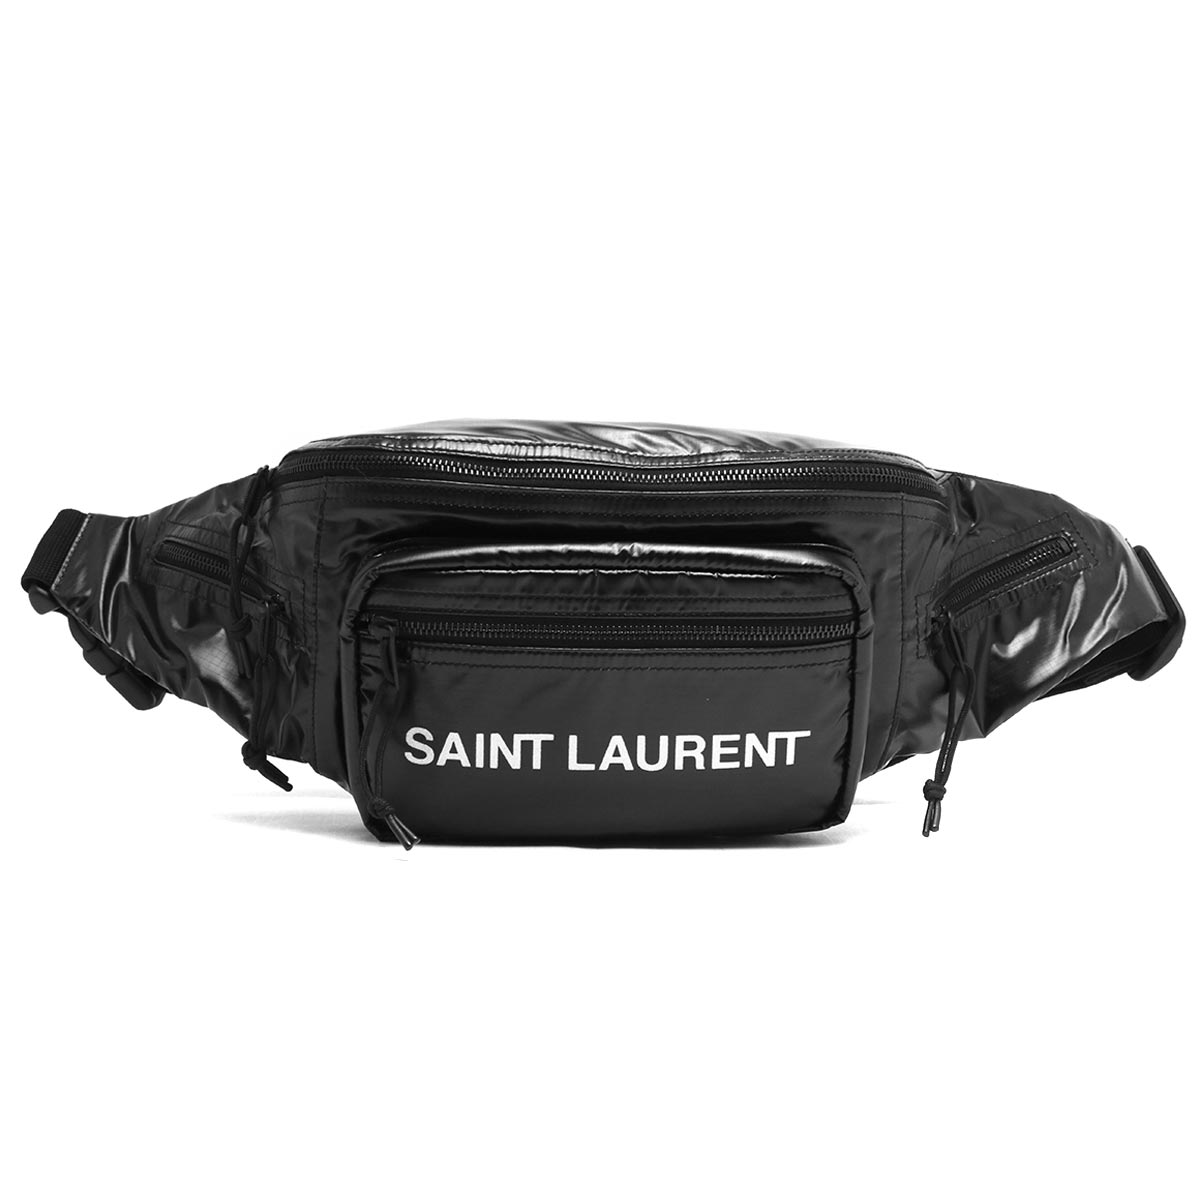 26110円 おすすめ特集 完売品 Saint Laurent サンローラン ボディーバッグ ウエストバッグ